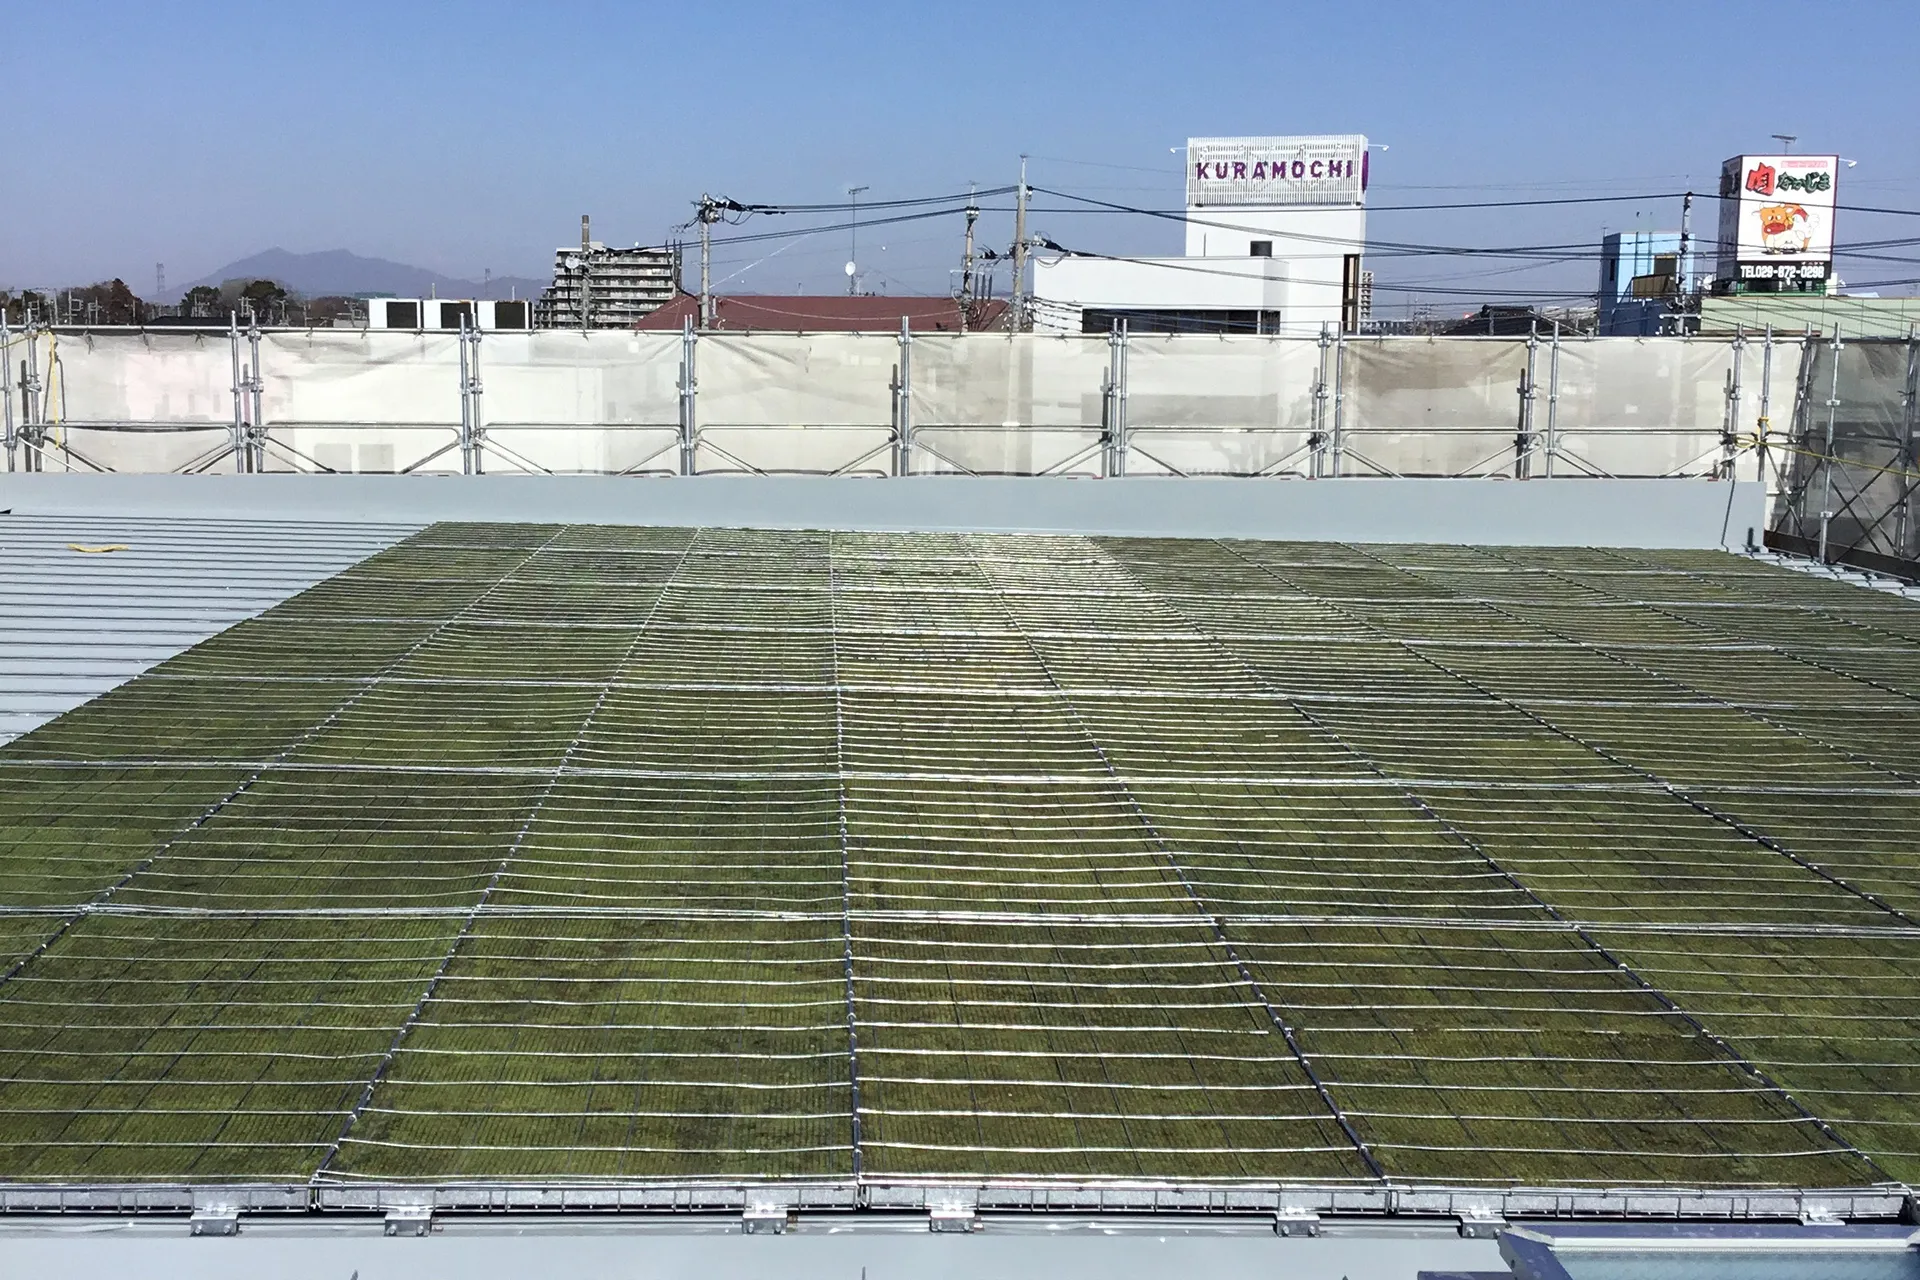 東鉄工業土浦出張所屋根苔緑化工事のサムネイル画像です